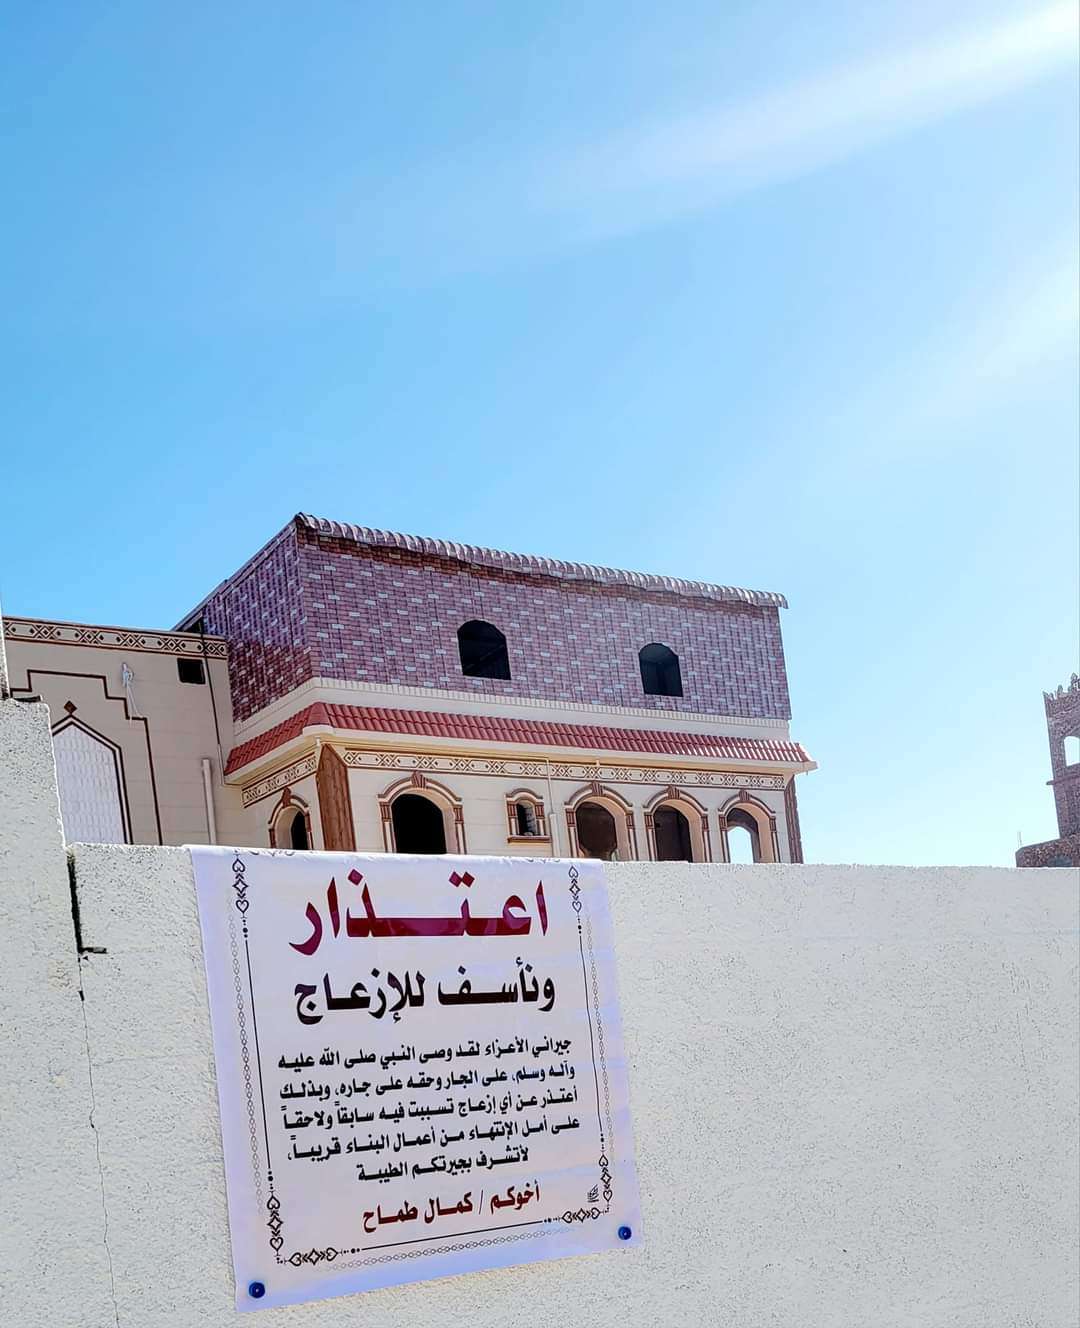 فنان شهير يرفع لافته امام منزله موجهه لجيرانه في صنعاء ويثير جدلا واسعا